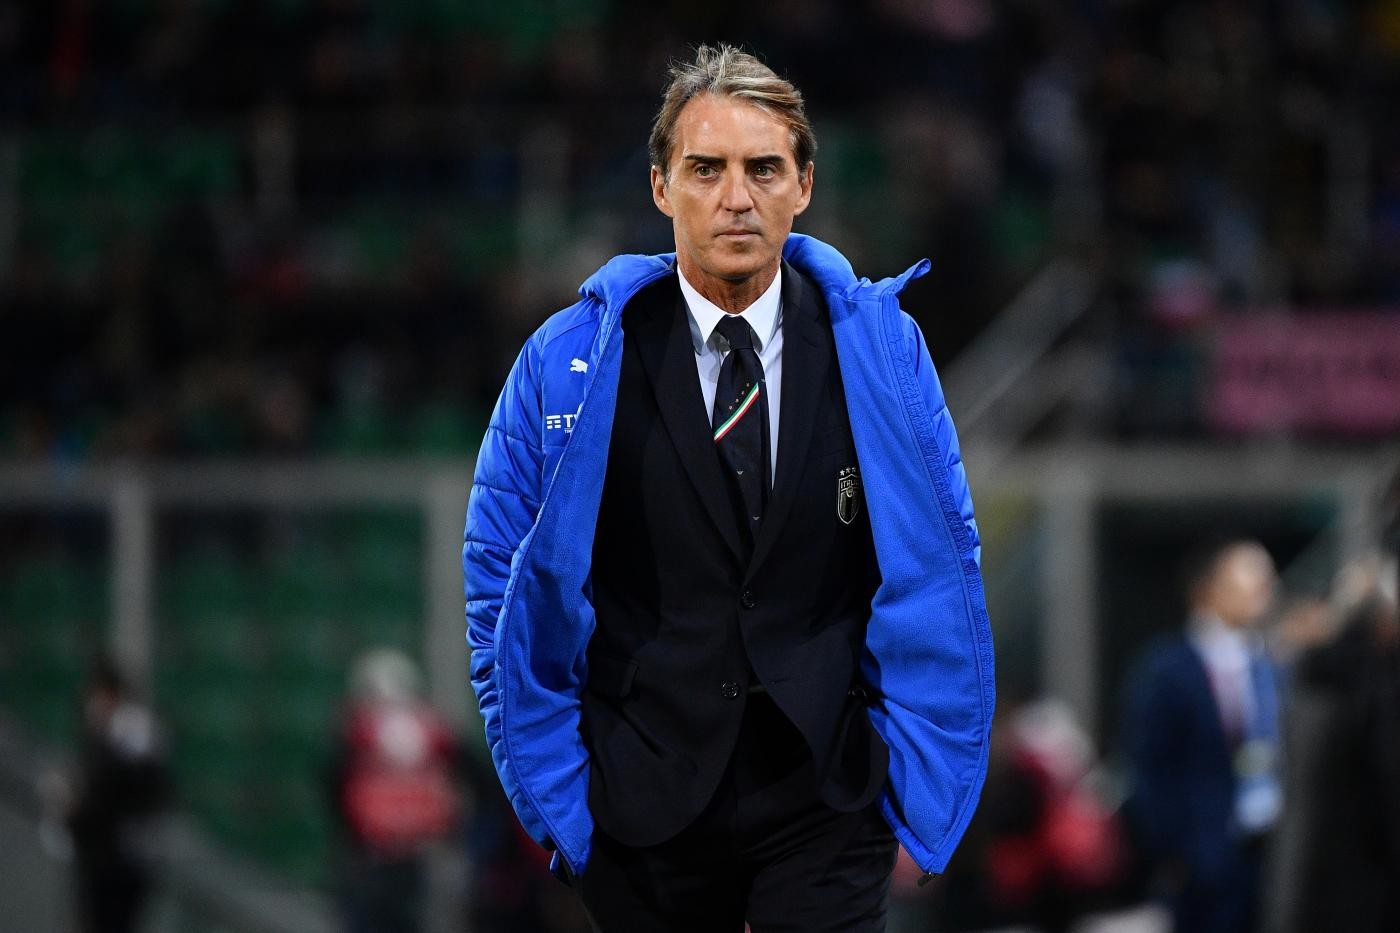 Nazionale, Mancini: “Il sorteggio dei gironi dell’Europeo non mi preoccupa”